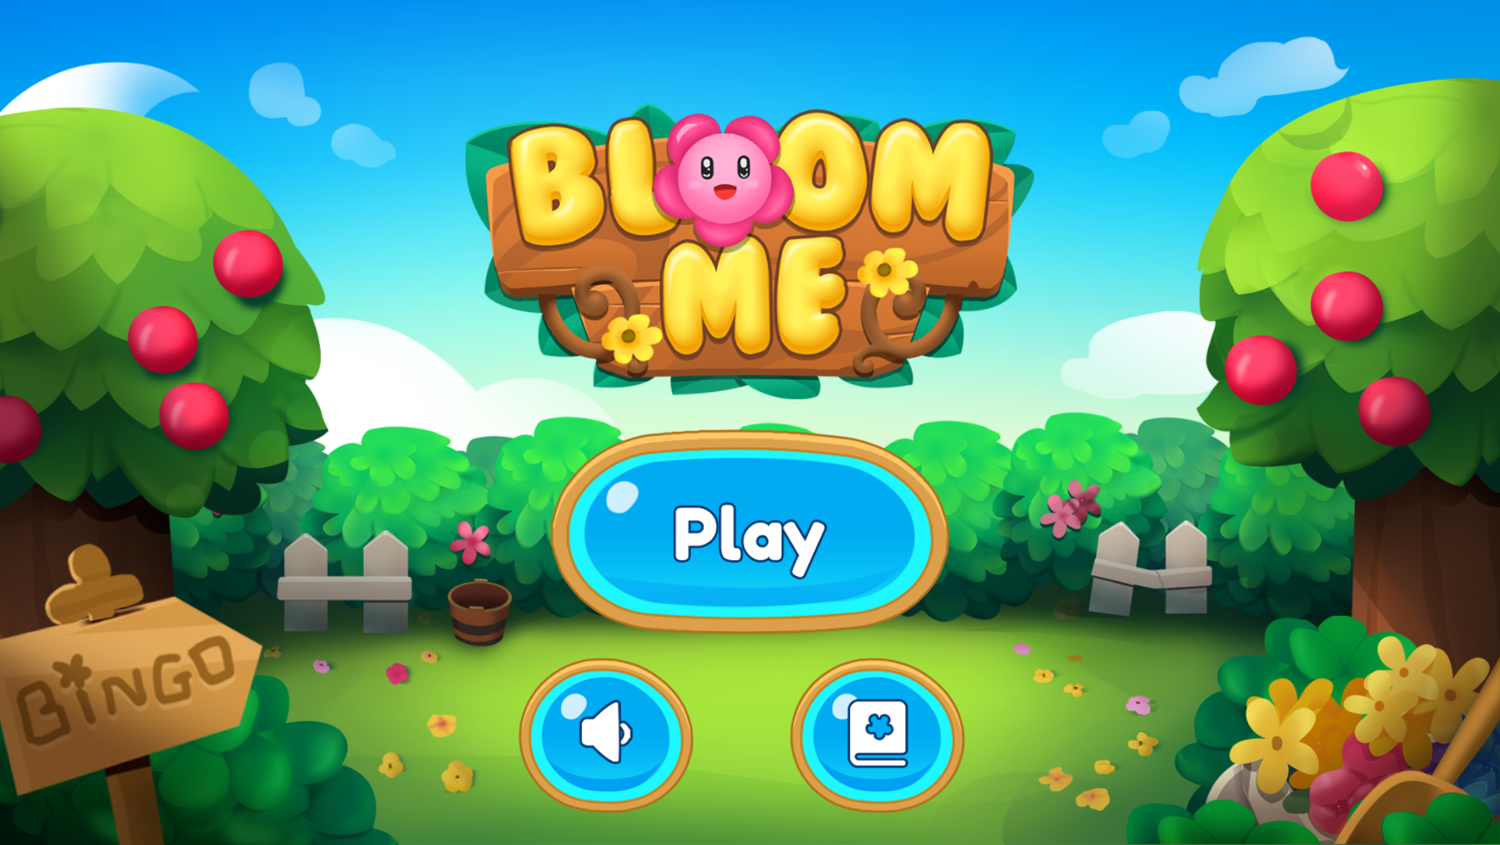 Bloom Me Game Welcome Screen Screenshot.